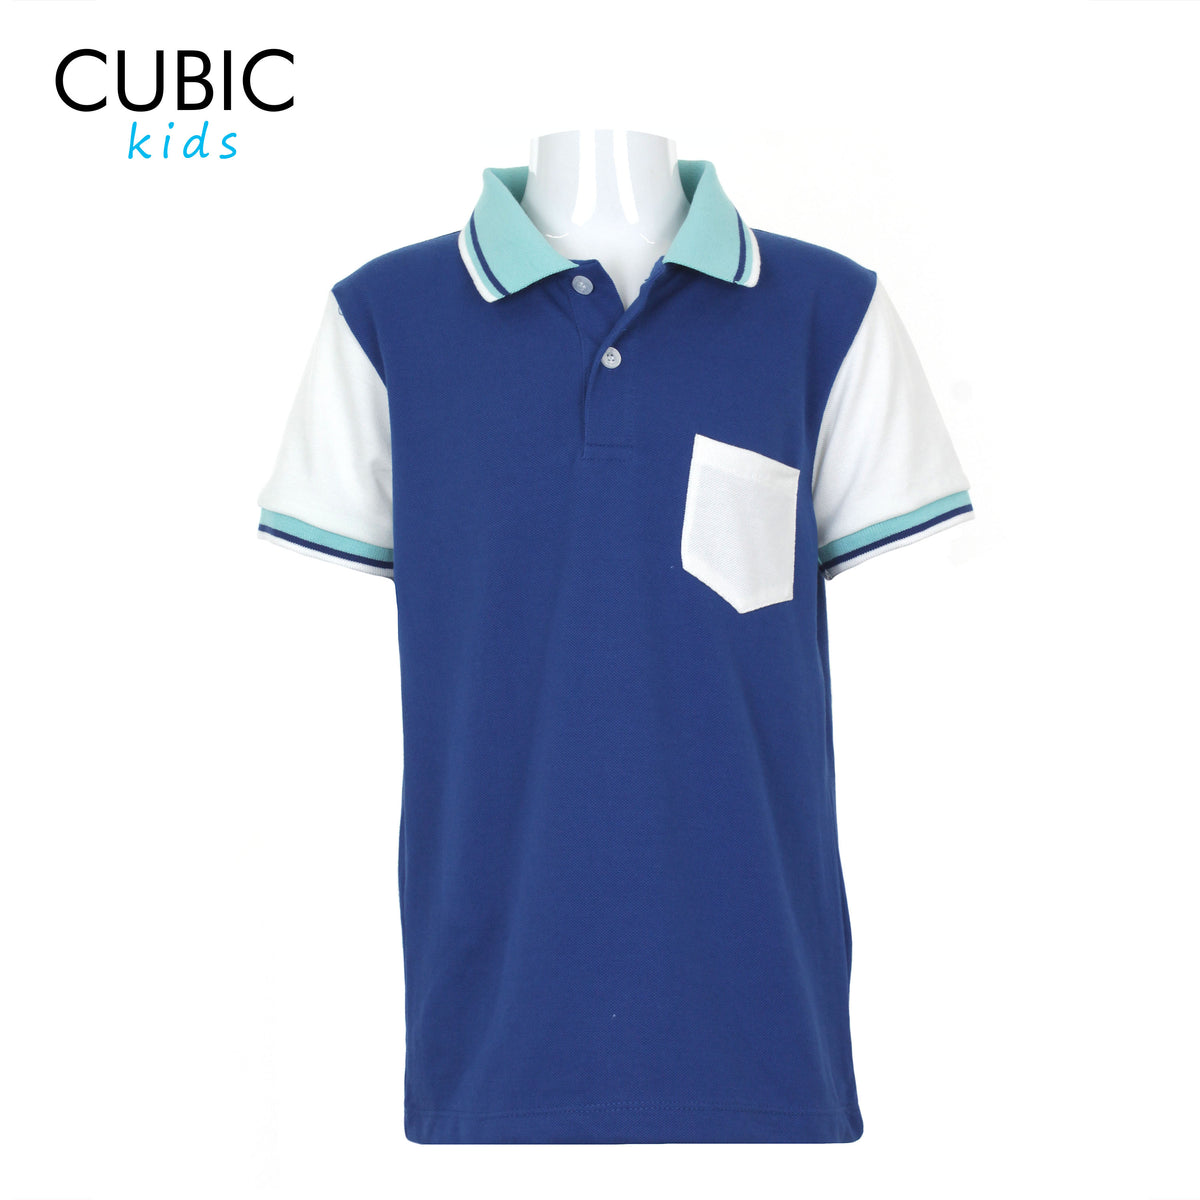 Cubic Boys Kids Pique Polo Shirt Polo-Shirt Collar Top Top for Boys - CKP2220H